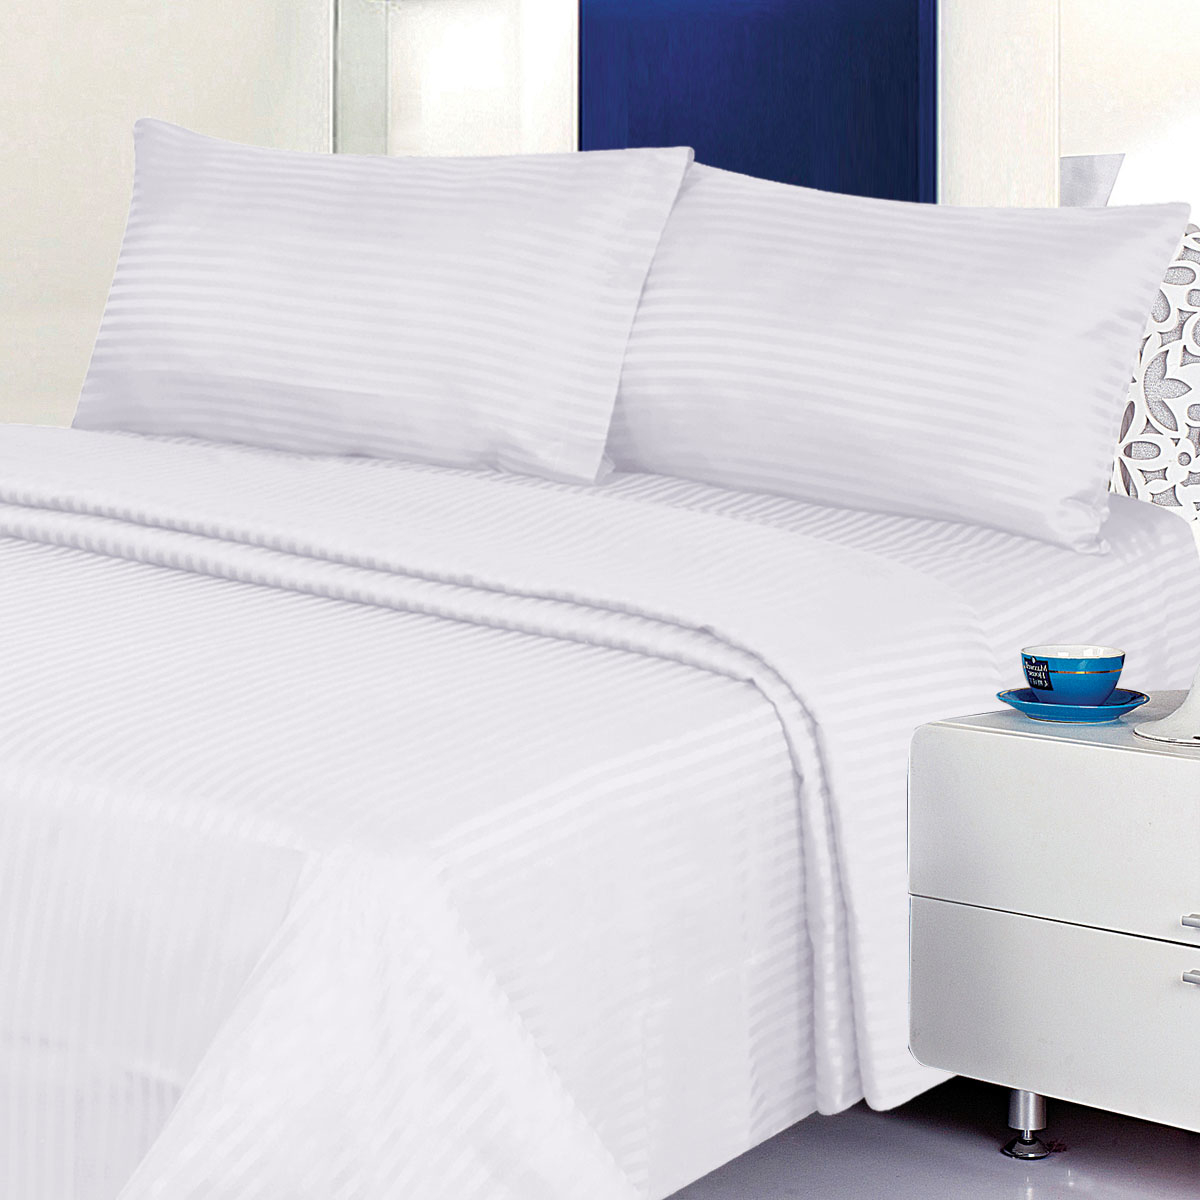 Deluxe 6PC Classic Cotton-Blend Sateen Dobby Stripe Bed Sheet Set - Full, Light Blue